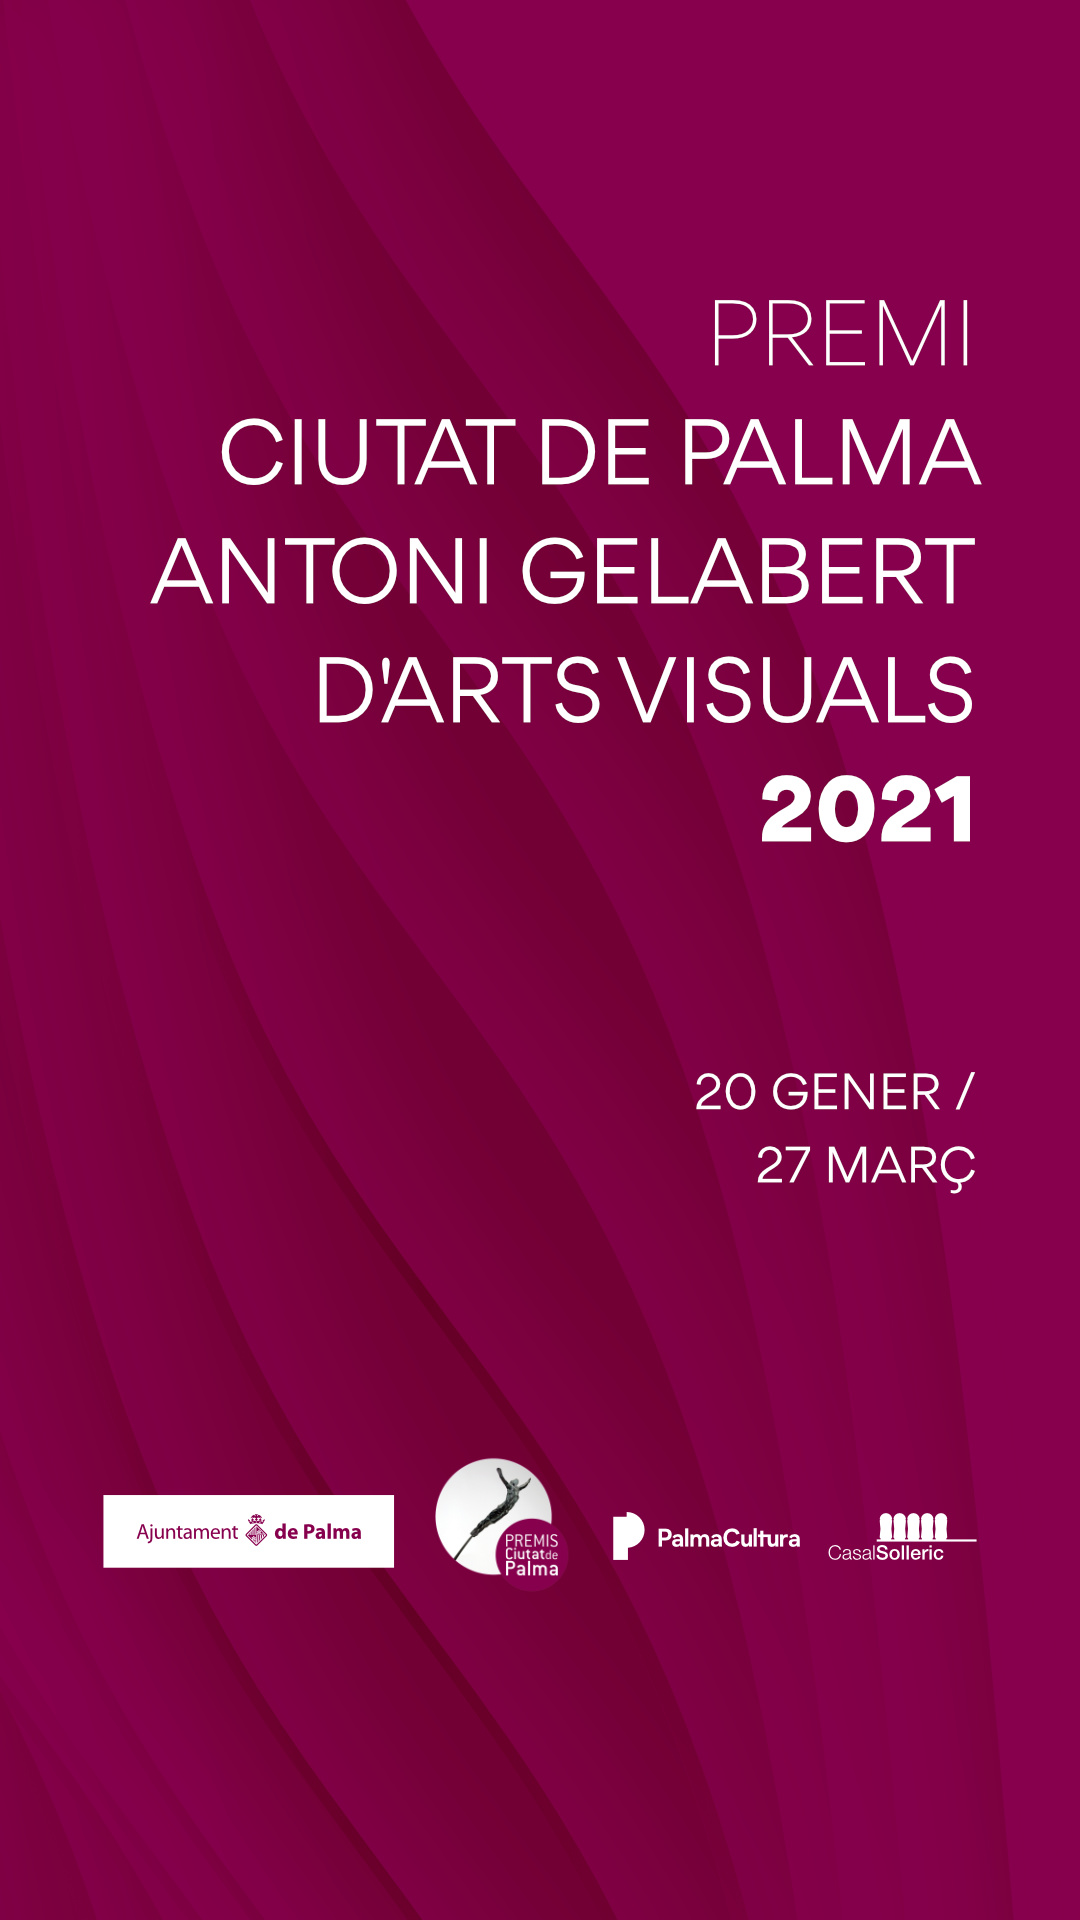 Premi arts visuals 2021